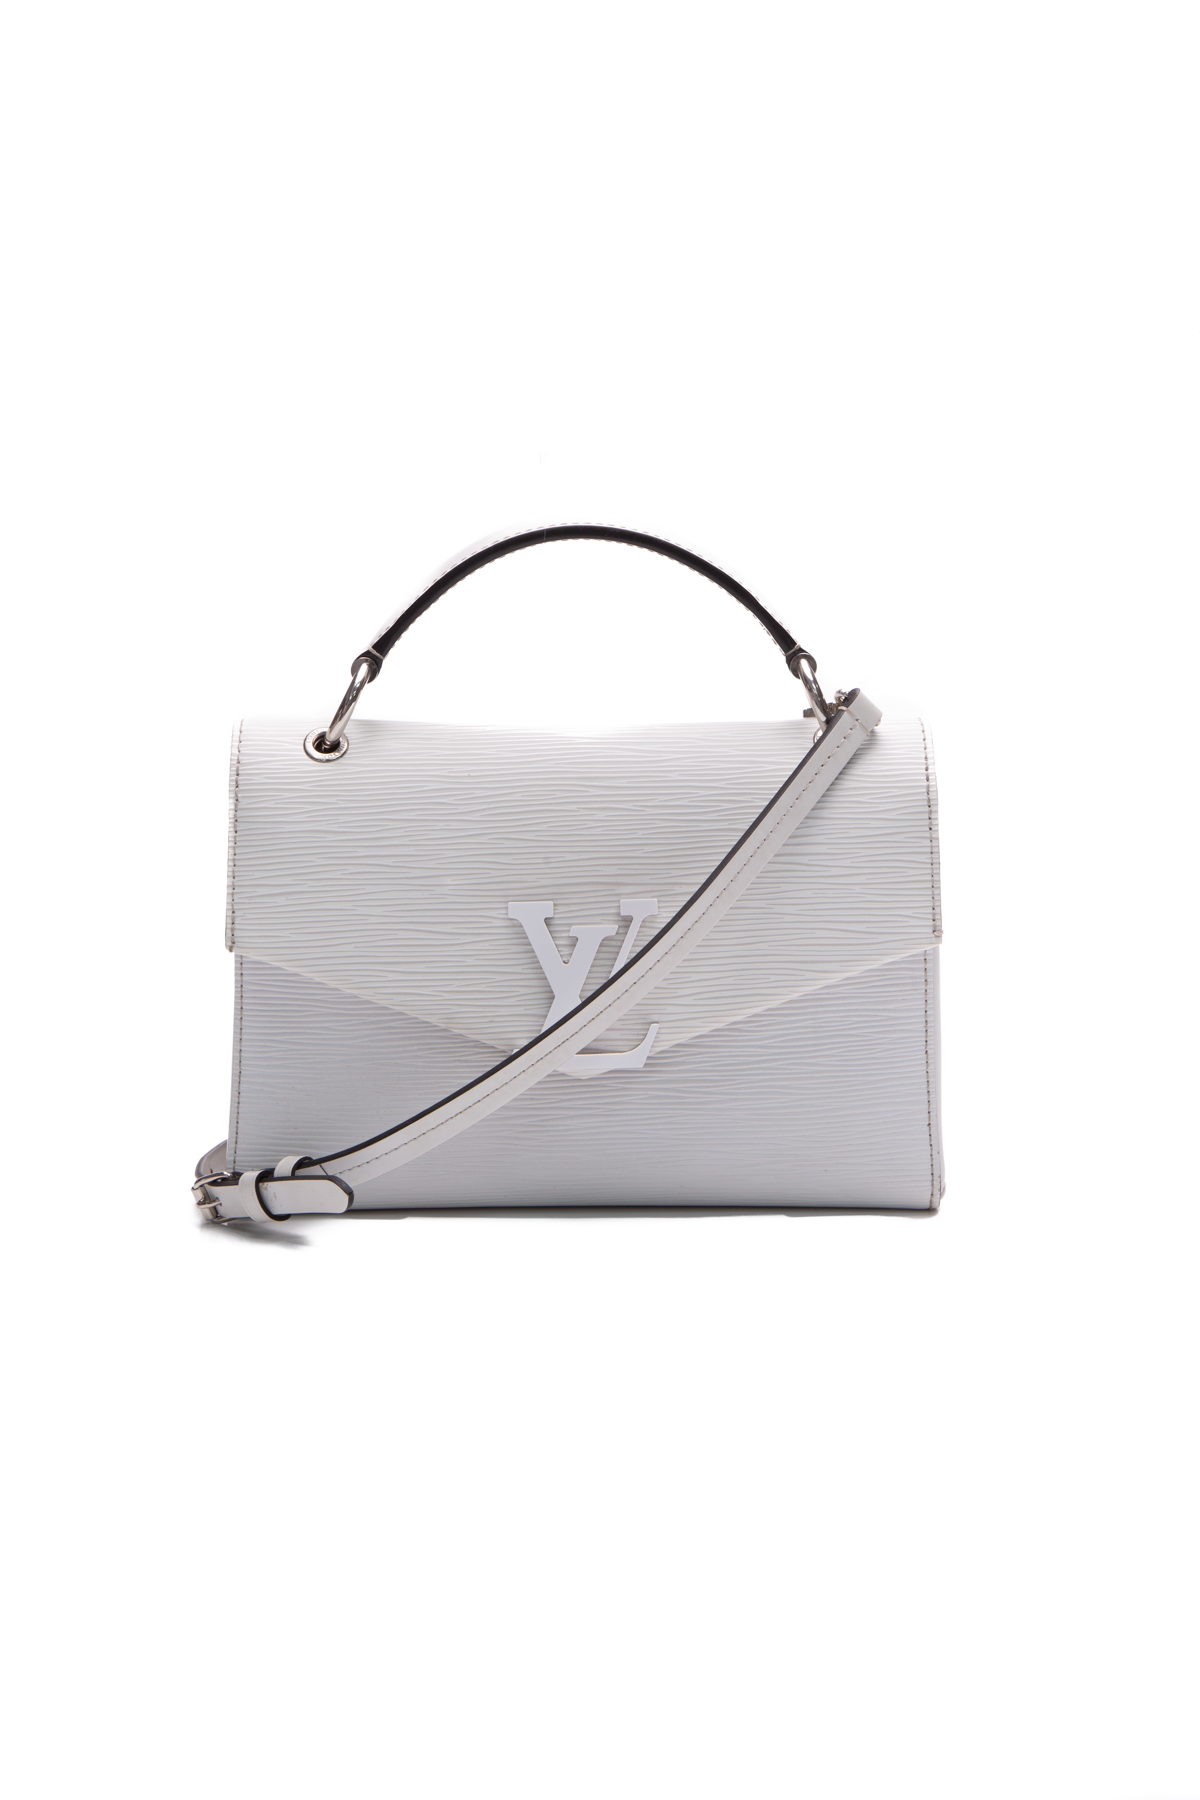 Louis Vuitton Louis Vuitton Epi Grenelle PM - Black Crossbody Bags